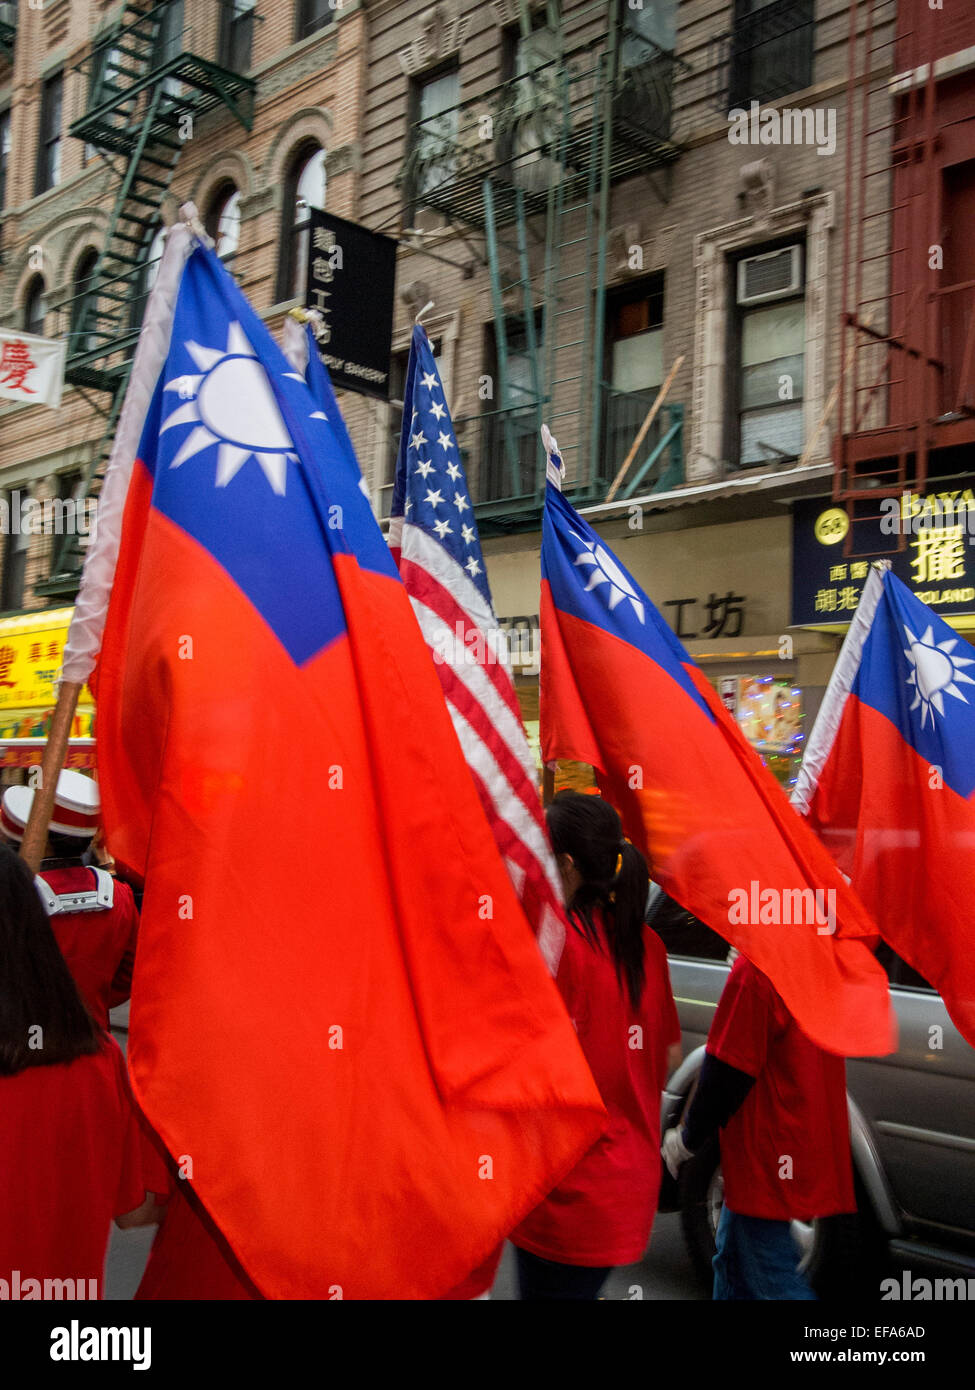 Un desfile en la calle Bayard en el Chinatown de Nueva York celebra la Kuomontang o Partido Popular Chino que gobierna la isla de Taiwán. Nota banderas estadounidenses y chinos nacionalistas. Foto de stock